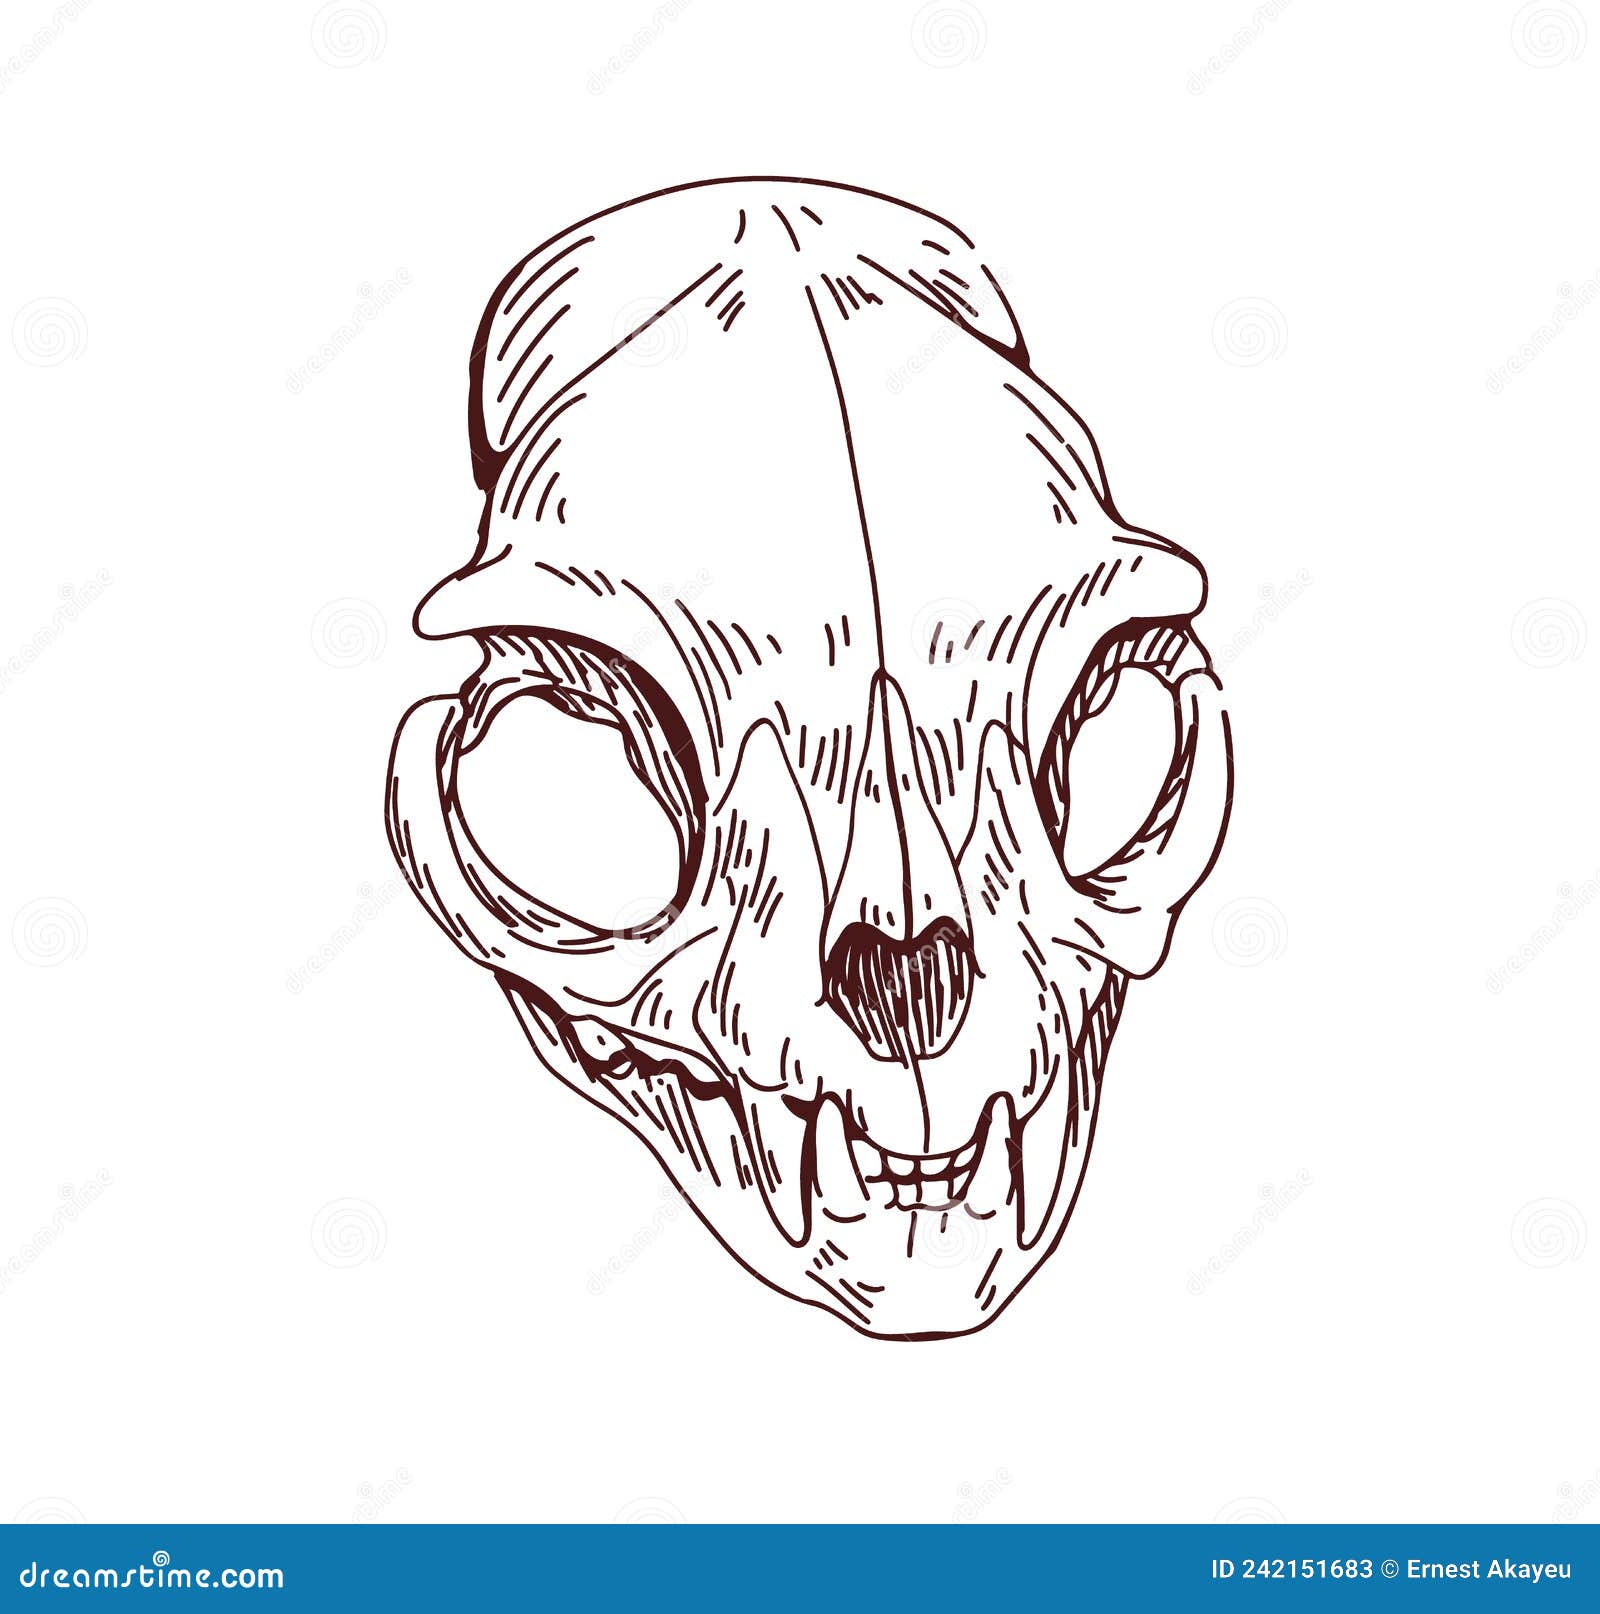 Cat Skull Pencil Drawing by akafangirl on DeviantArt